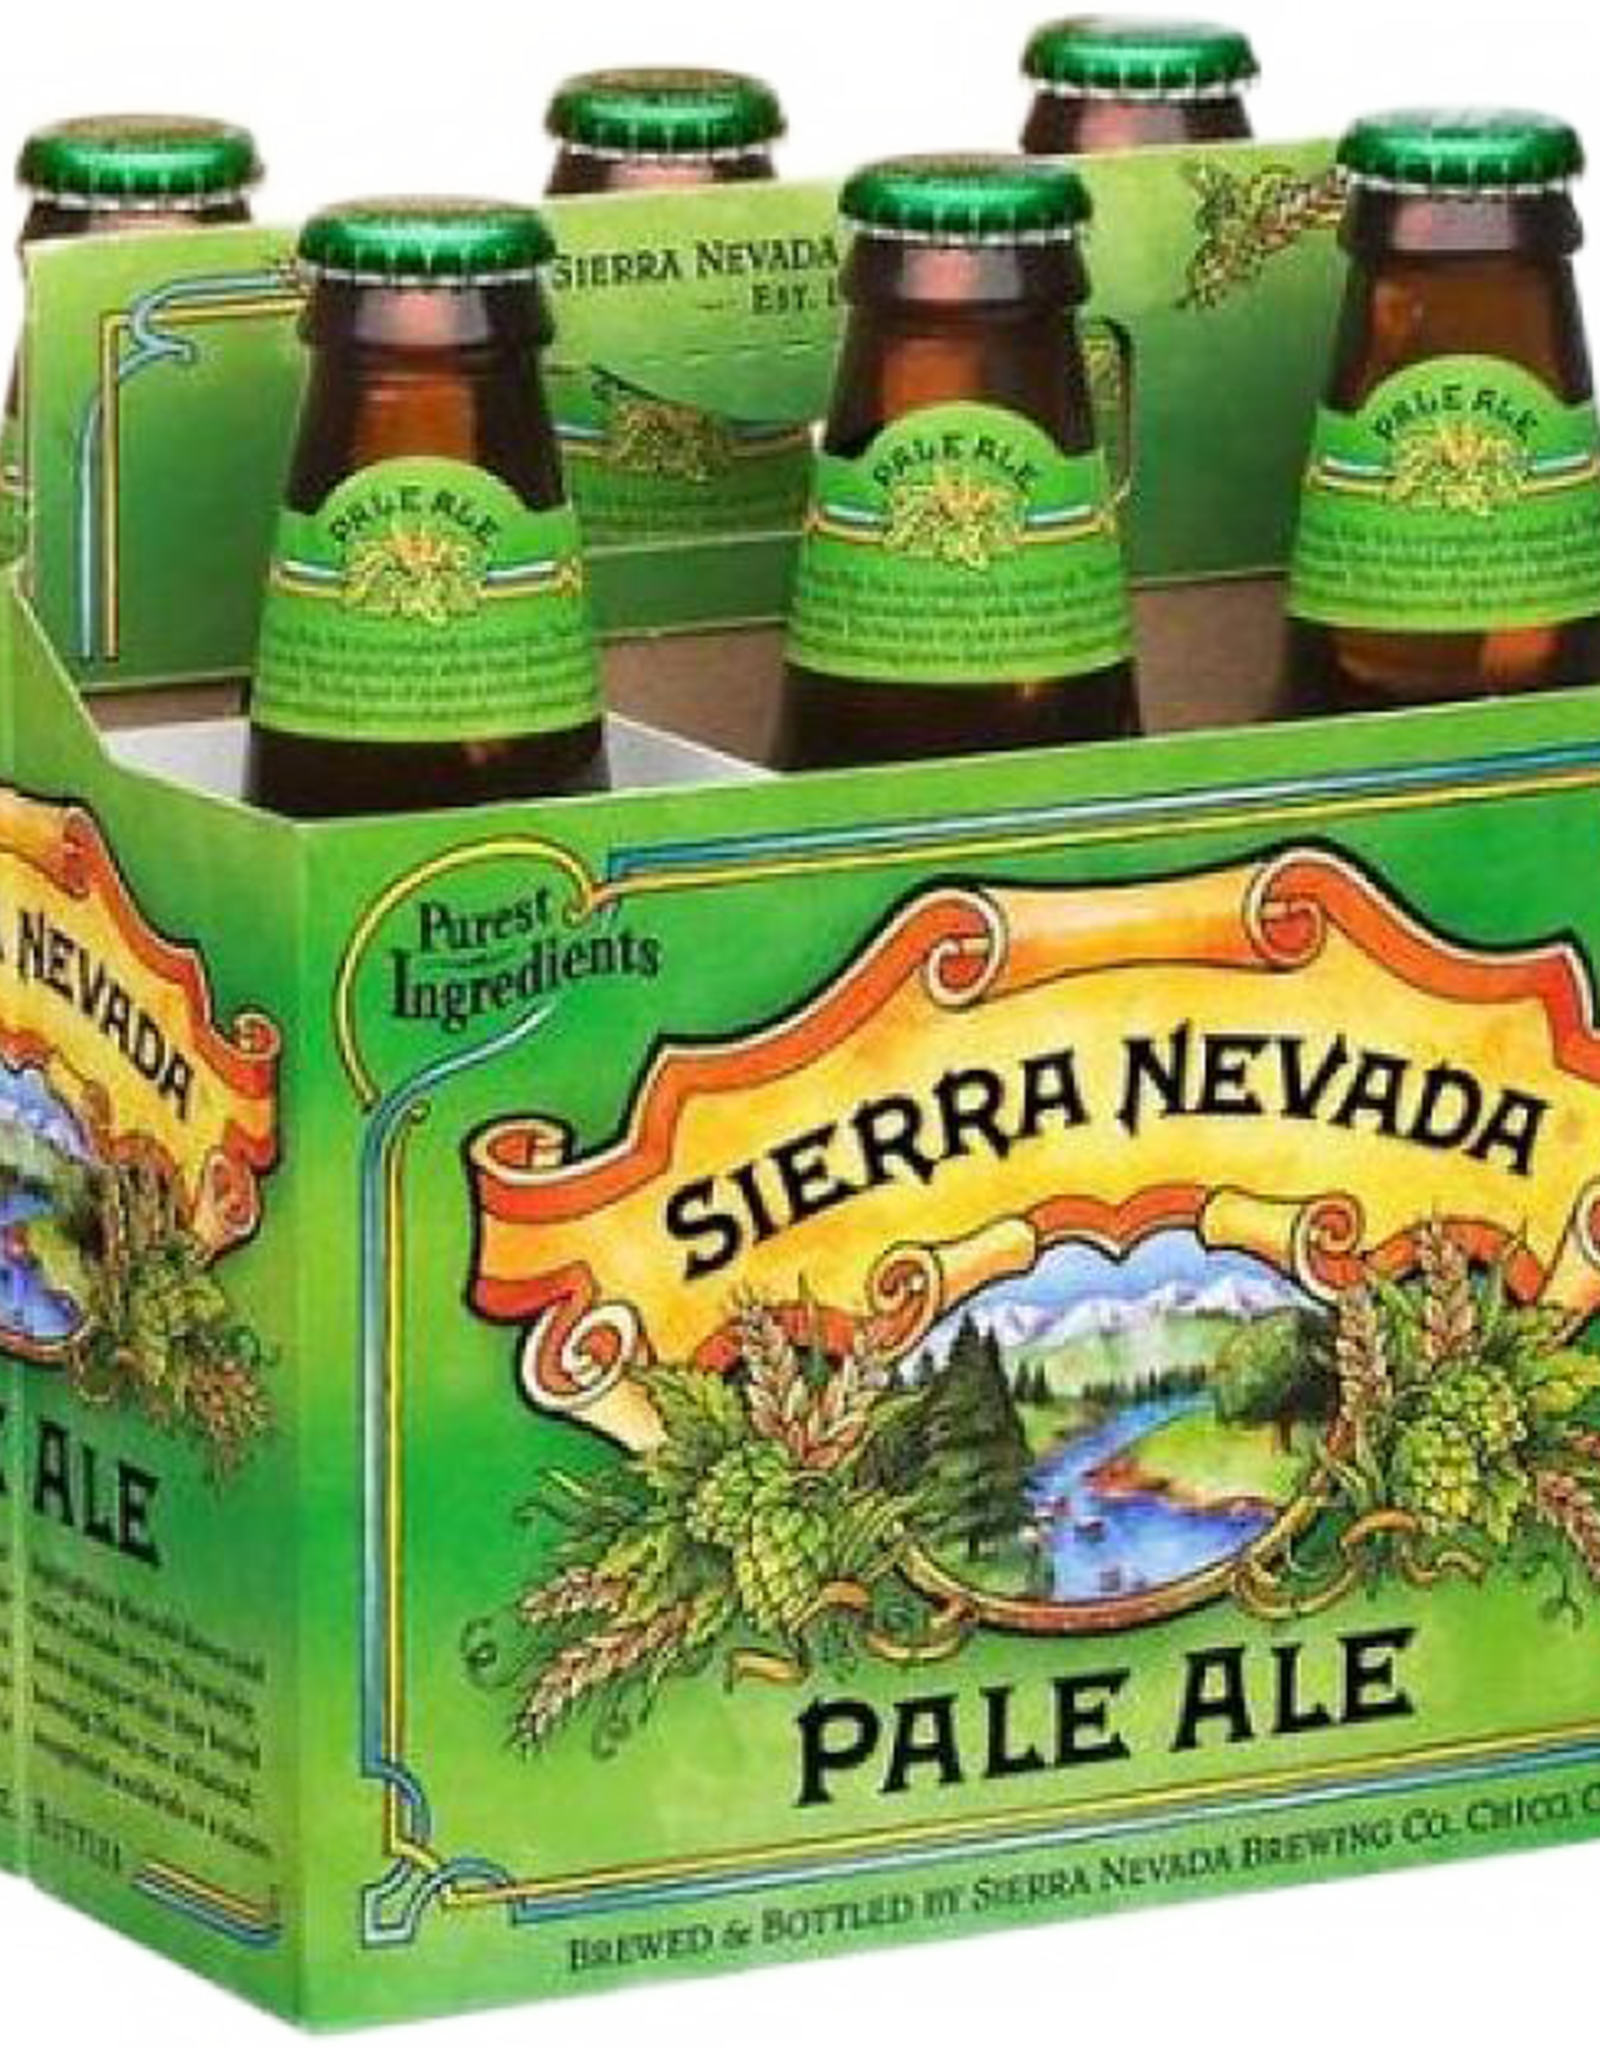 Sierra Nevada Pale Ale 6x12 oz bottles